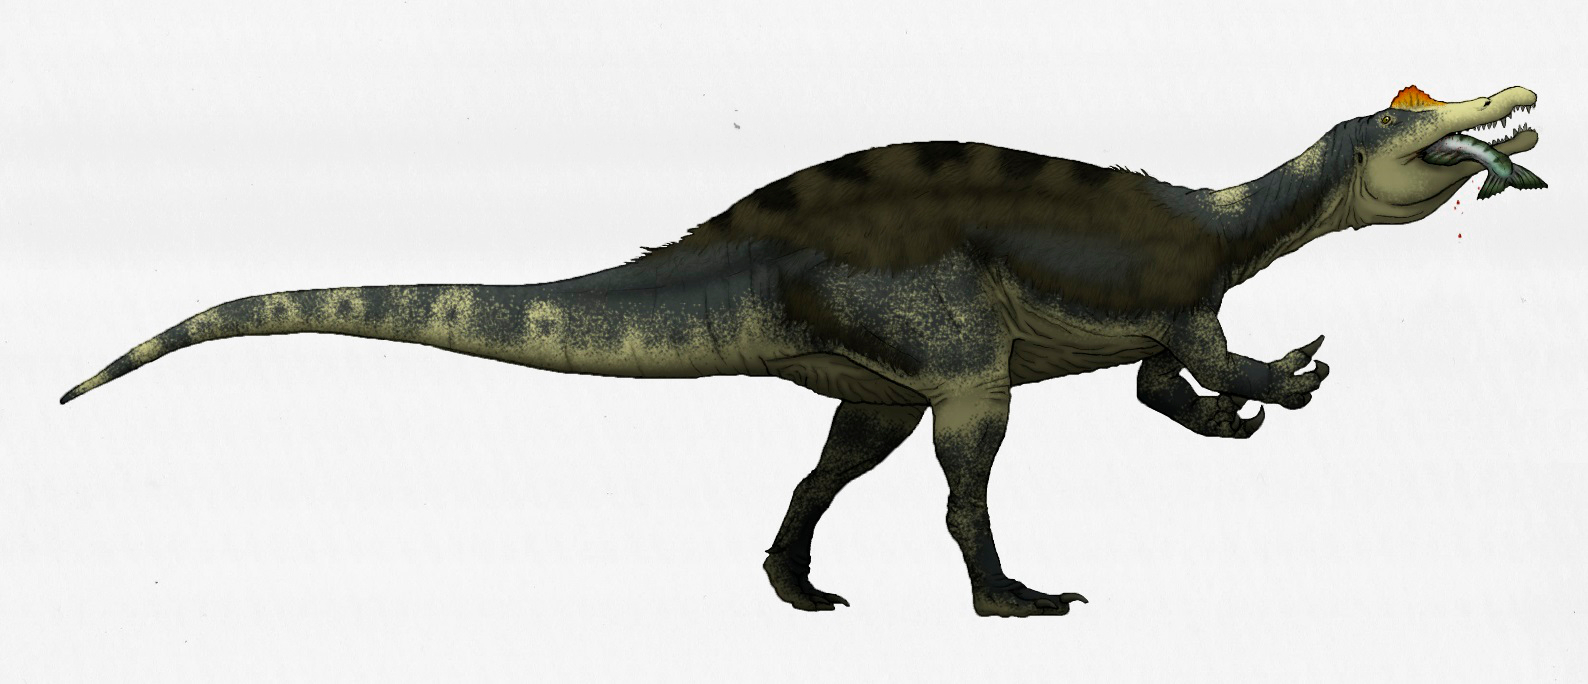 Dinosaurus s nejdelším rodovým jménem, popsaný v průběhu roku 2020, je spinosauridní teropod Vallibonavenatrix cani. Tento středně velký predátor obýval v období rané křídy (asi před 129 až 125 miliony let) oblast dnešního východního Španělska. Jeho 